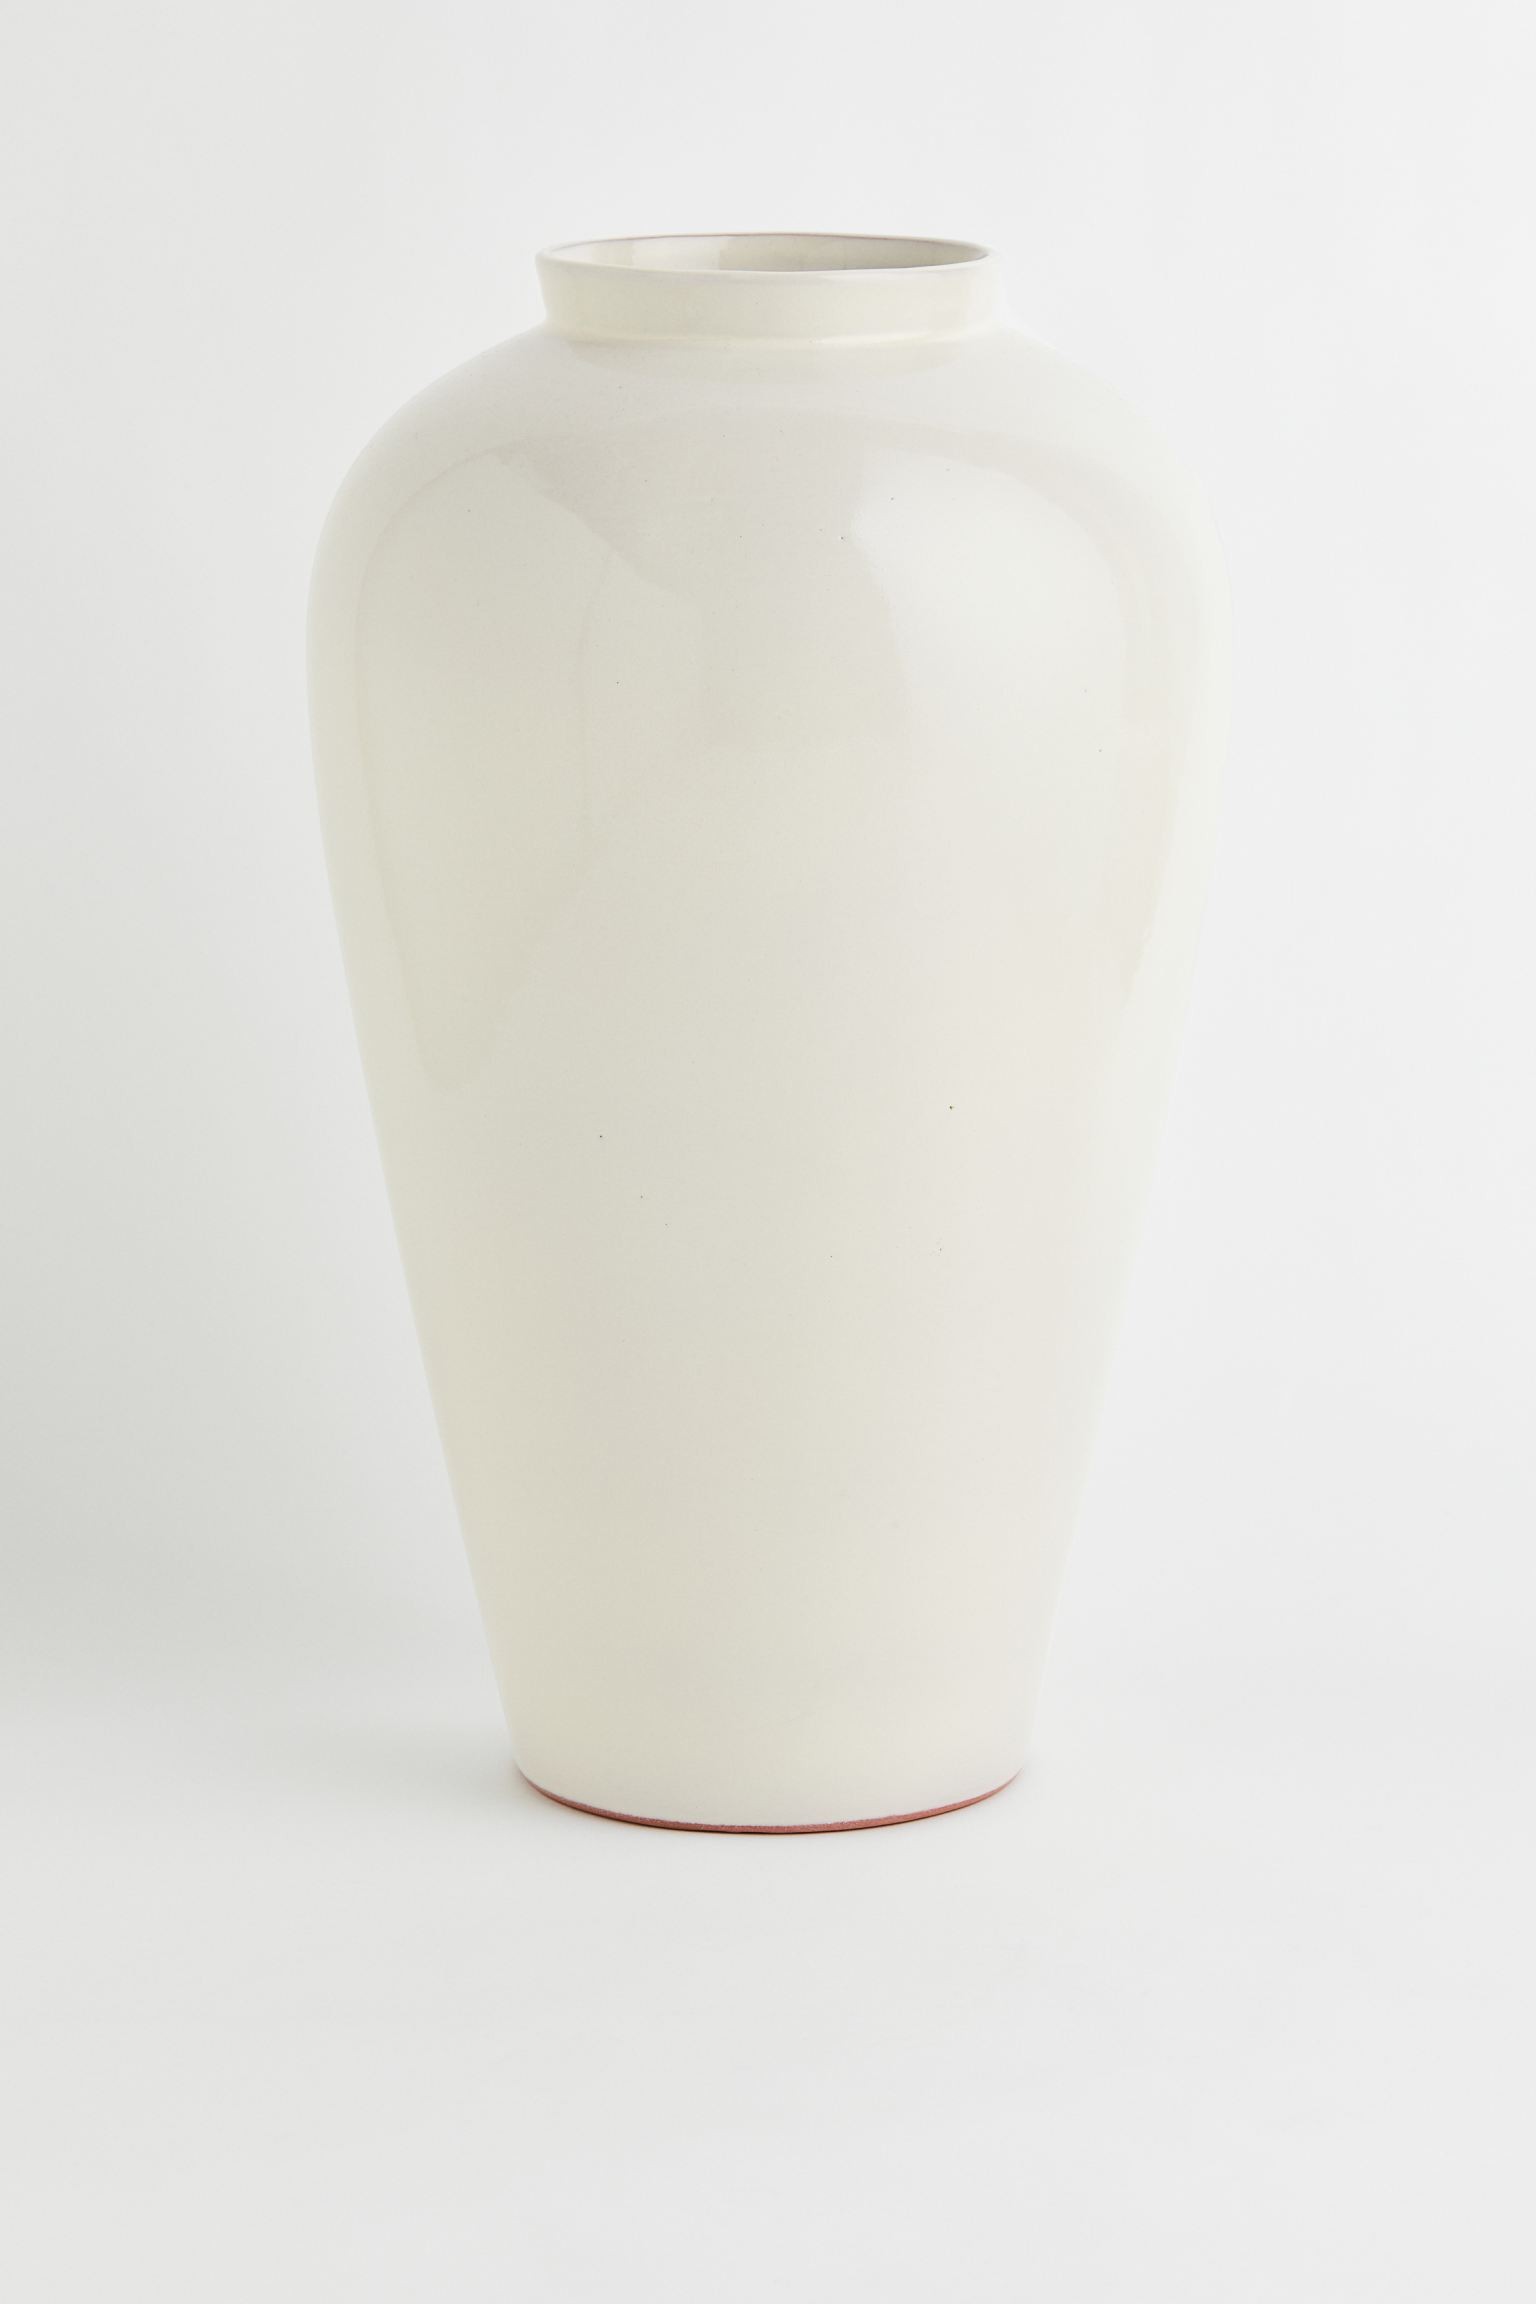 Велика теракотова ваза, Натуральний білий